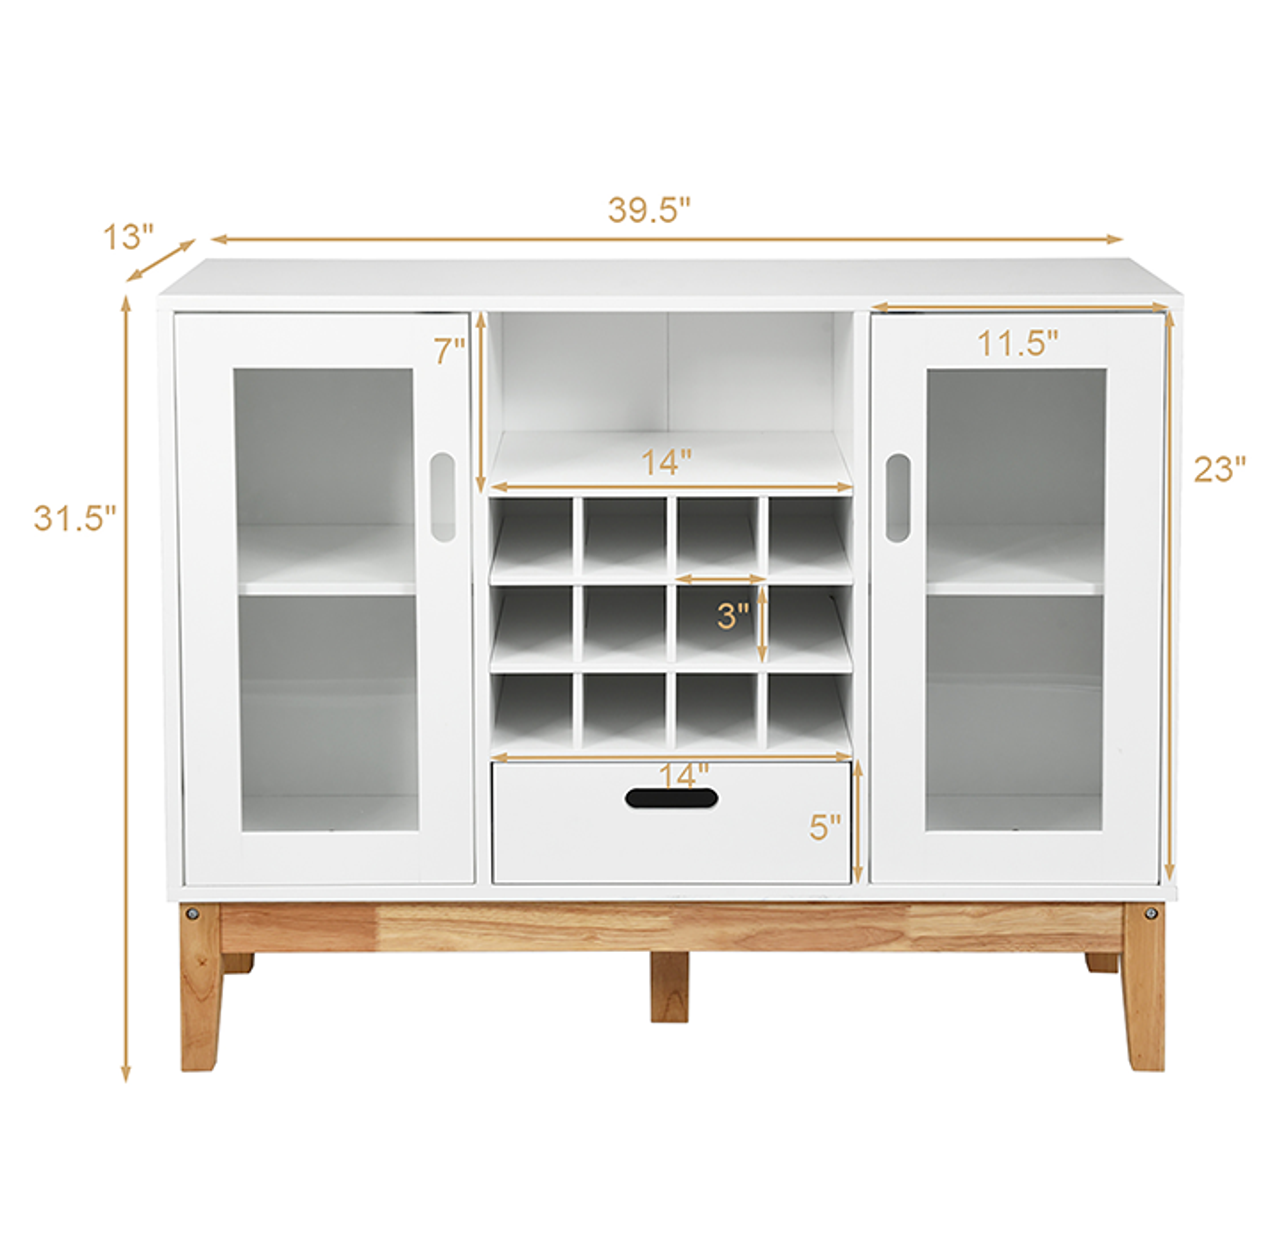 White Wood Wine Storage Cabinet product image